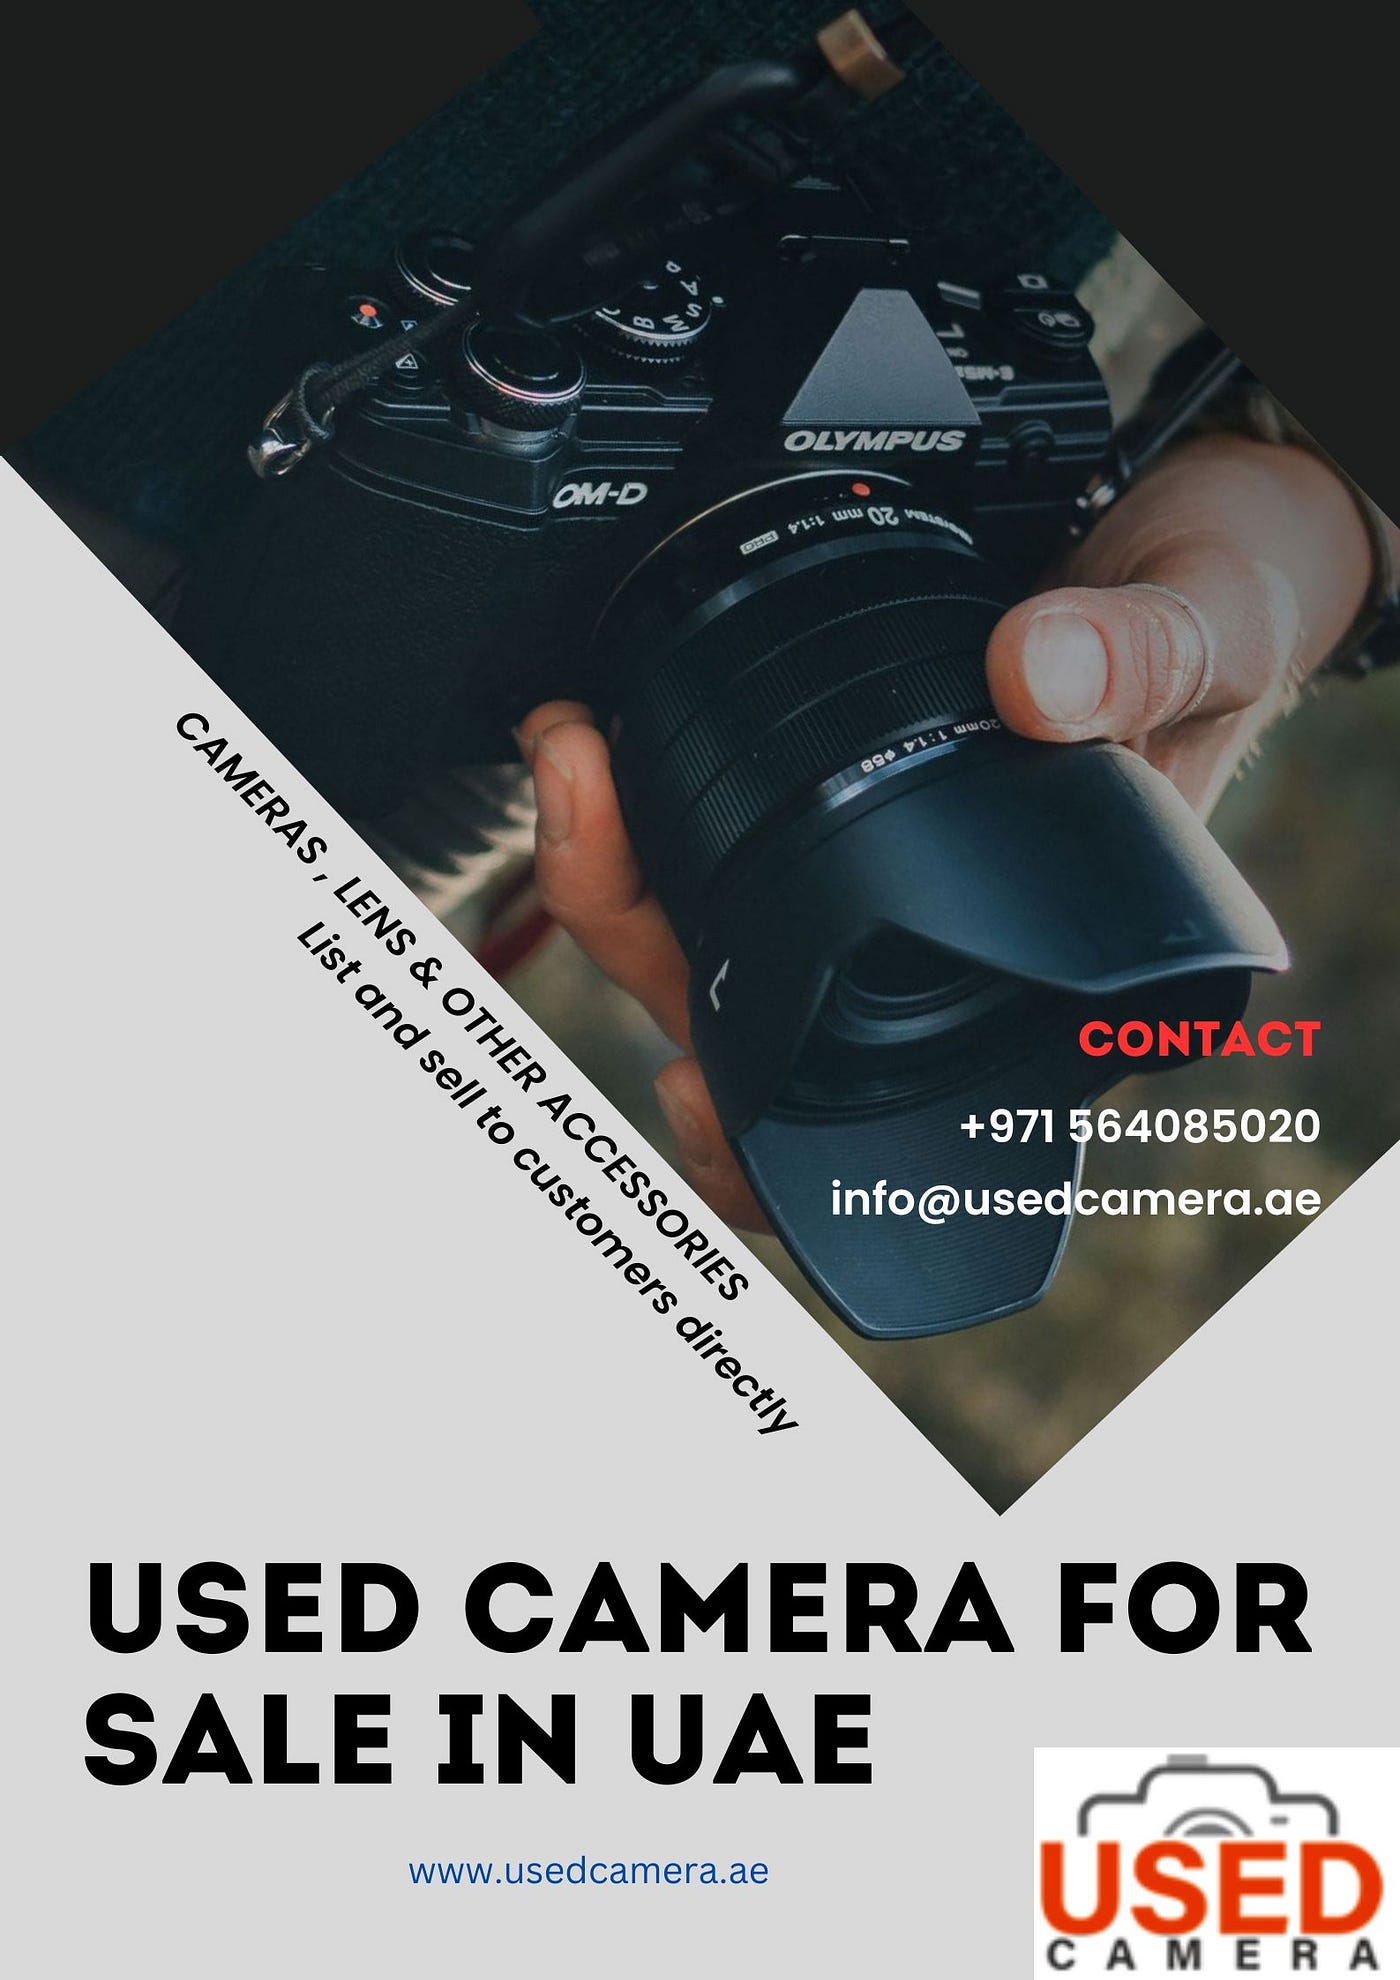 Used camera for sale in UAE | Used Camera - Usedcamdubai - Medium